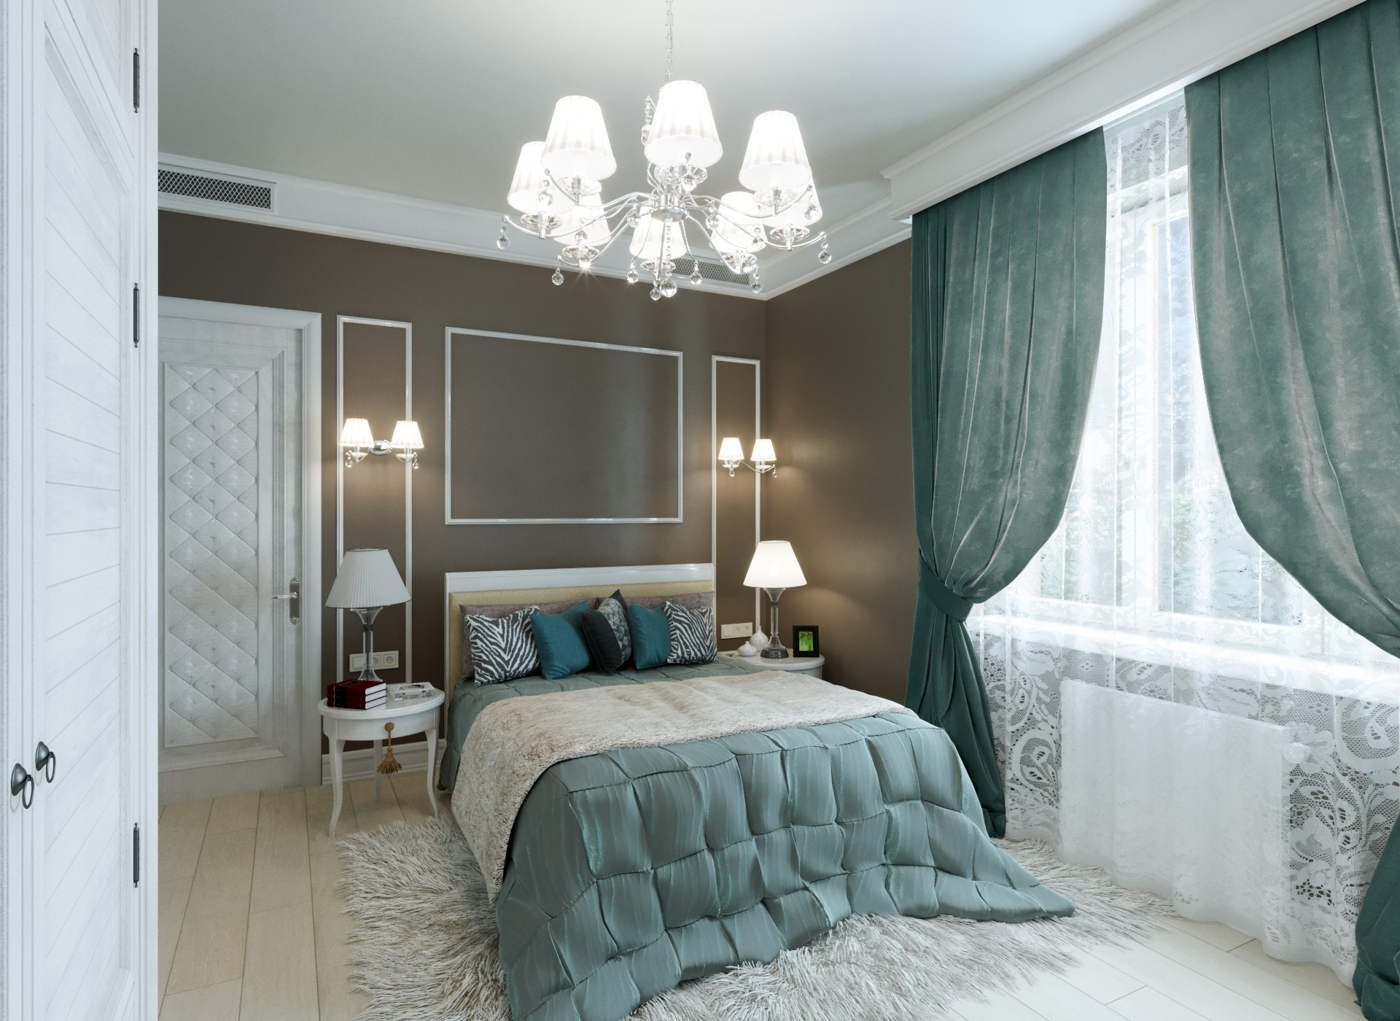 Дизайн спальни Киев современный стиль интерьера, новая классика, декор на стенах